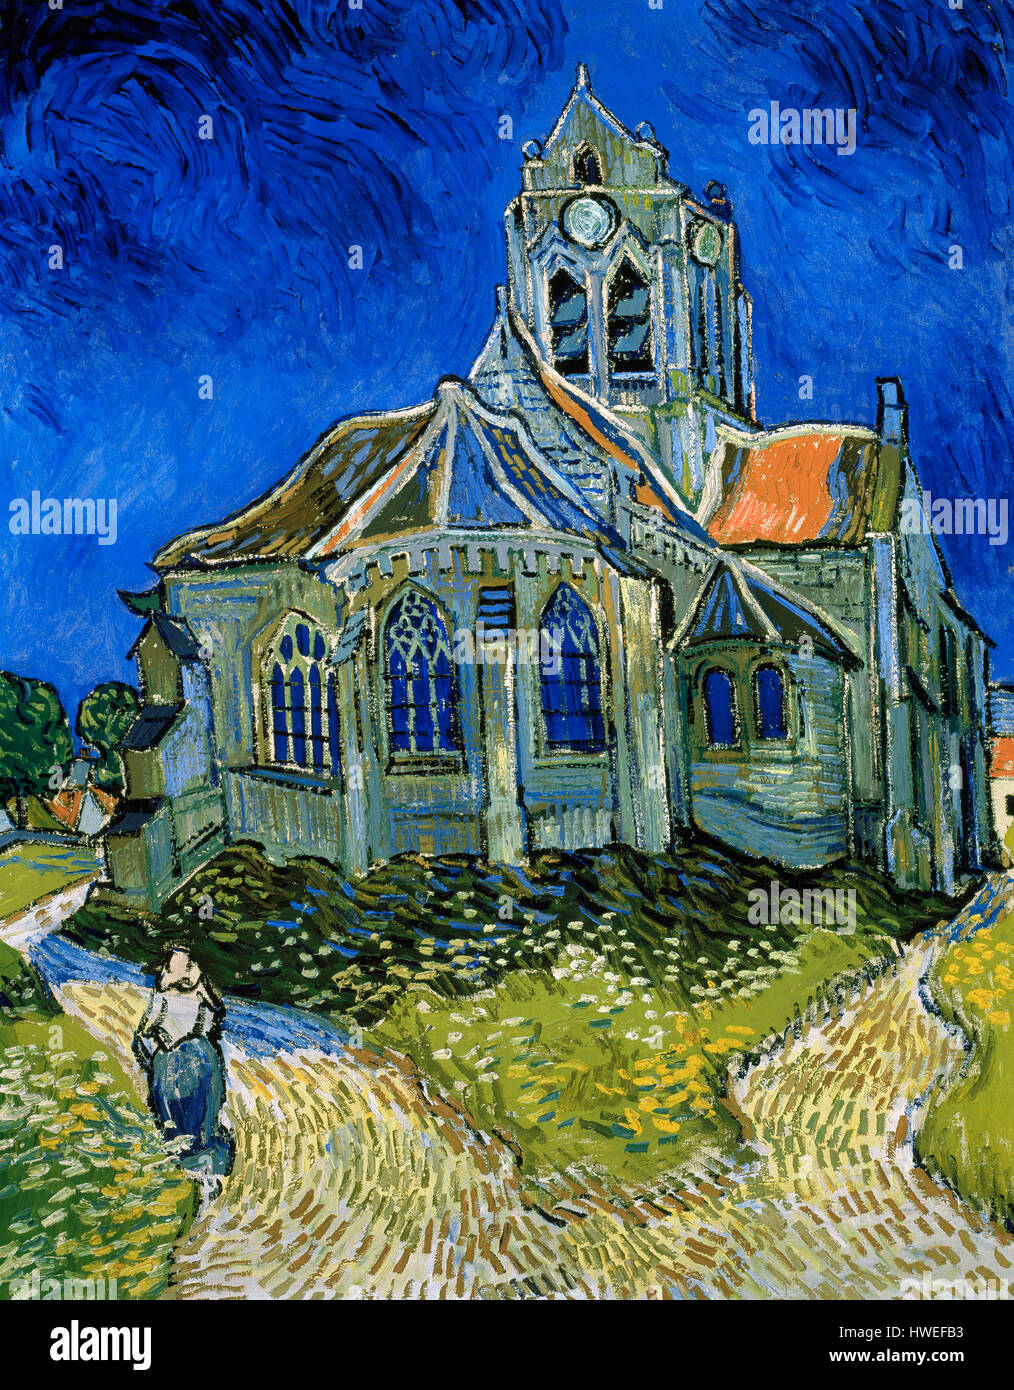 Vincent Van Gogh (1853-1890). Peintre postimpressionniste néerlandais. L'église à Auvers-sur-Oise, vue depuis le chevet, 1890. Huile sur toile. Musée d'Orsay. Paris. La France. Banque D'Images